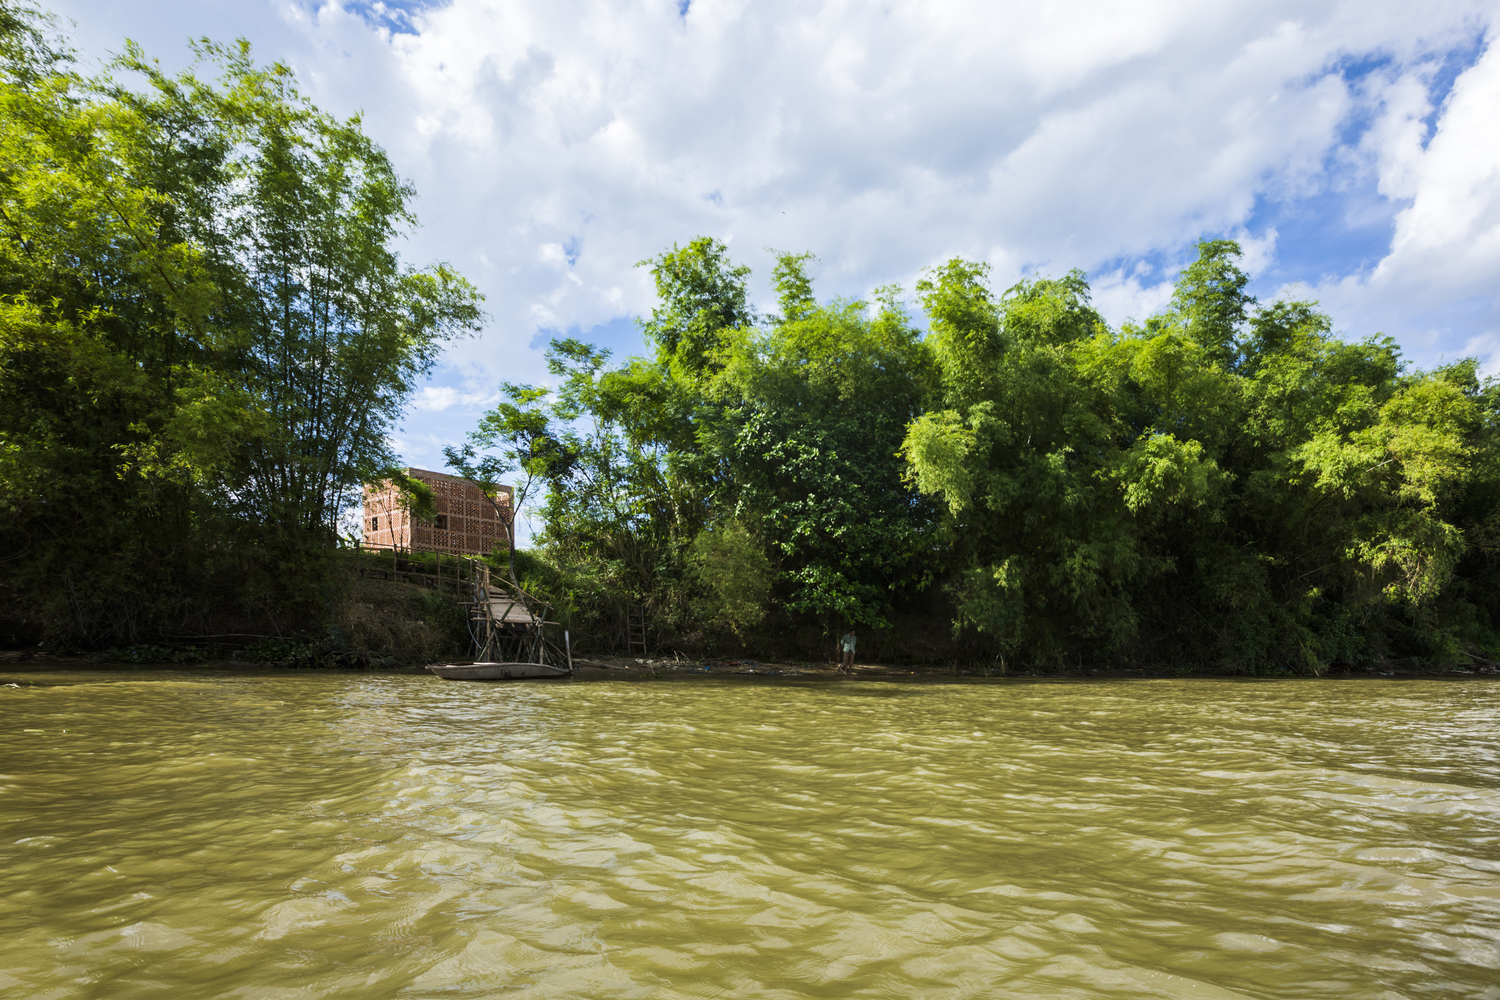 hình ảnh dòng sông Thu Bồn nằm phía sau xưởng gốm, tre xanh bao bọc xung quanh